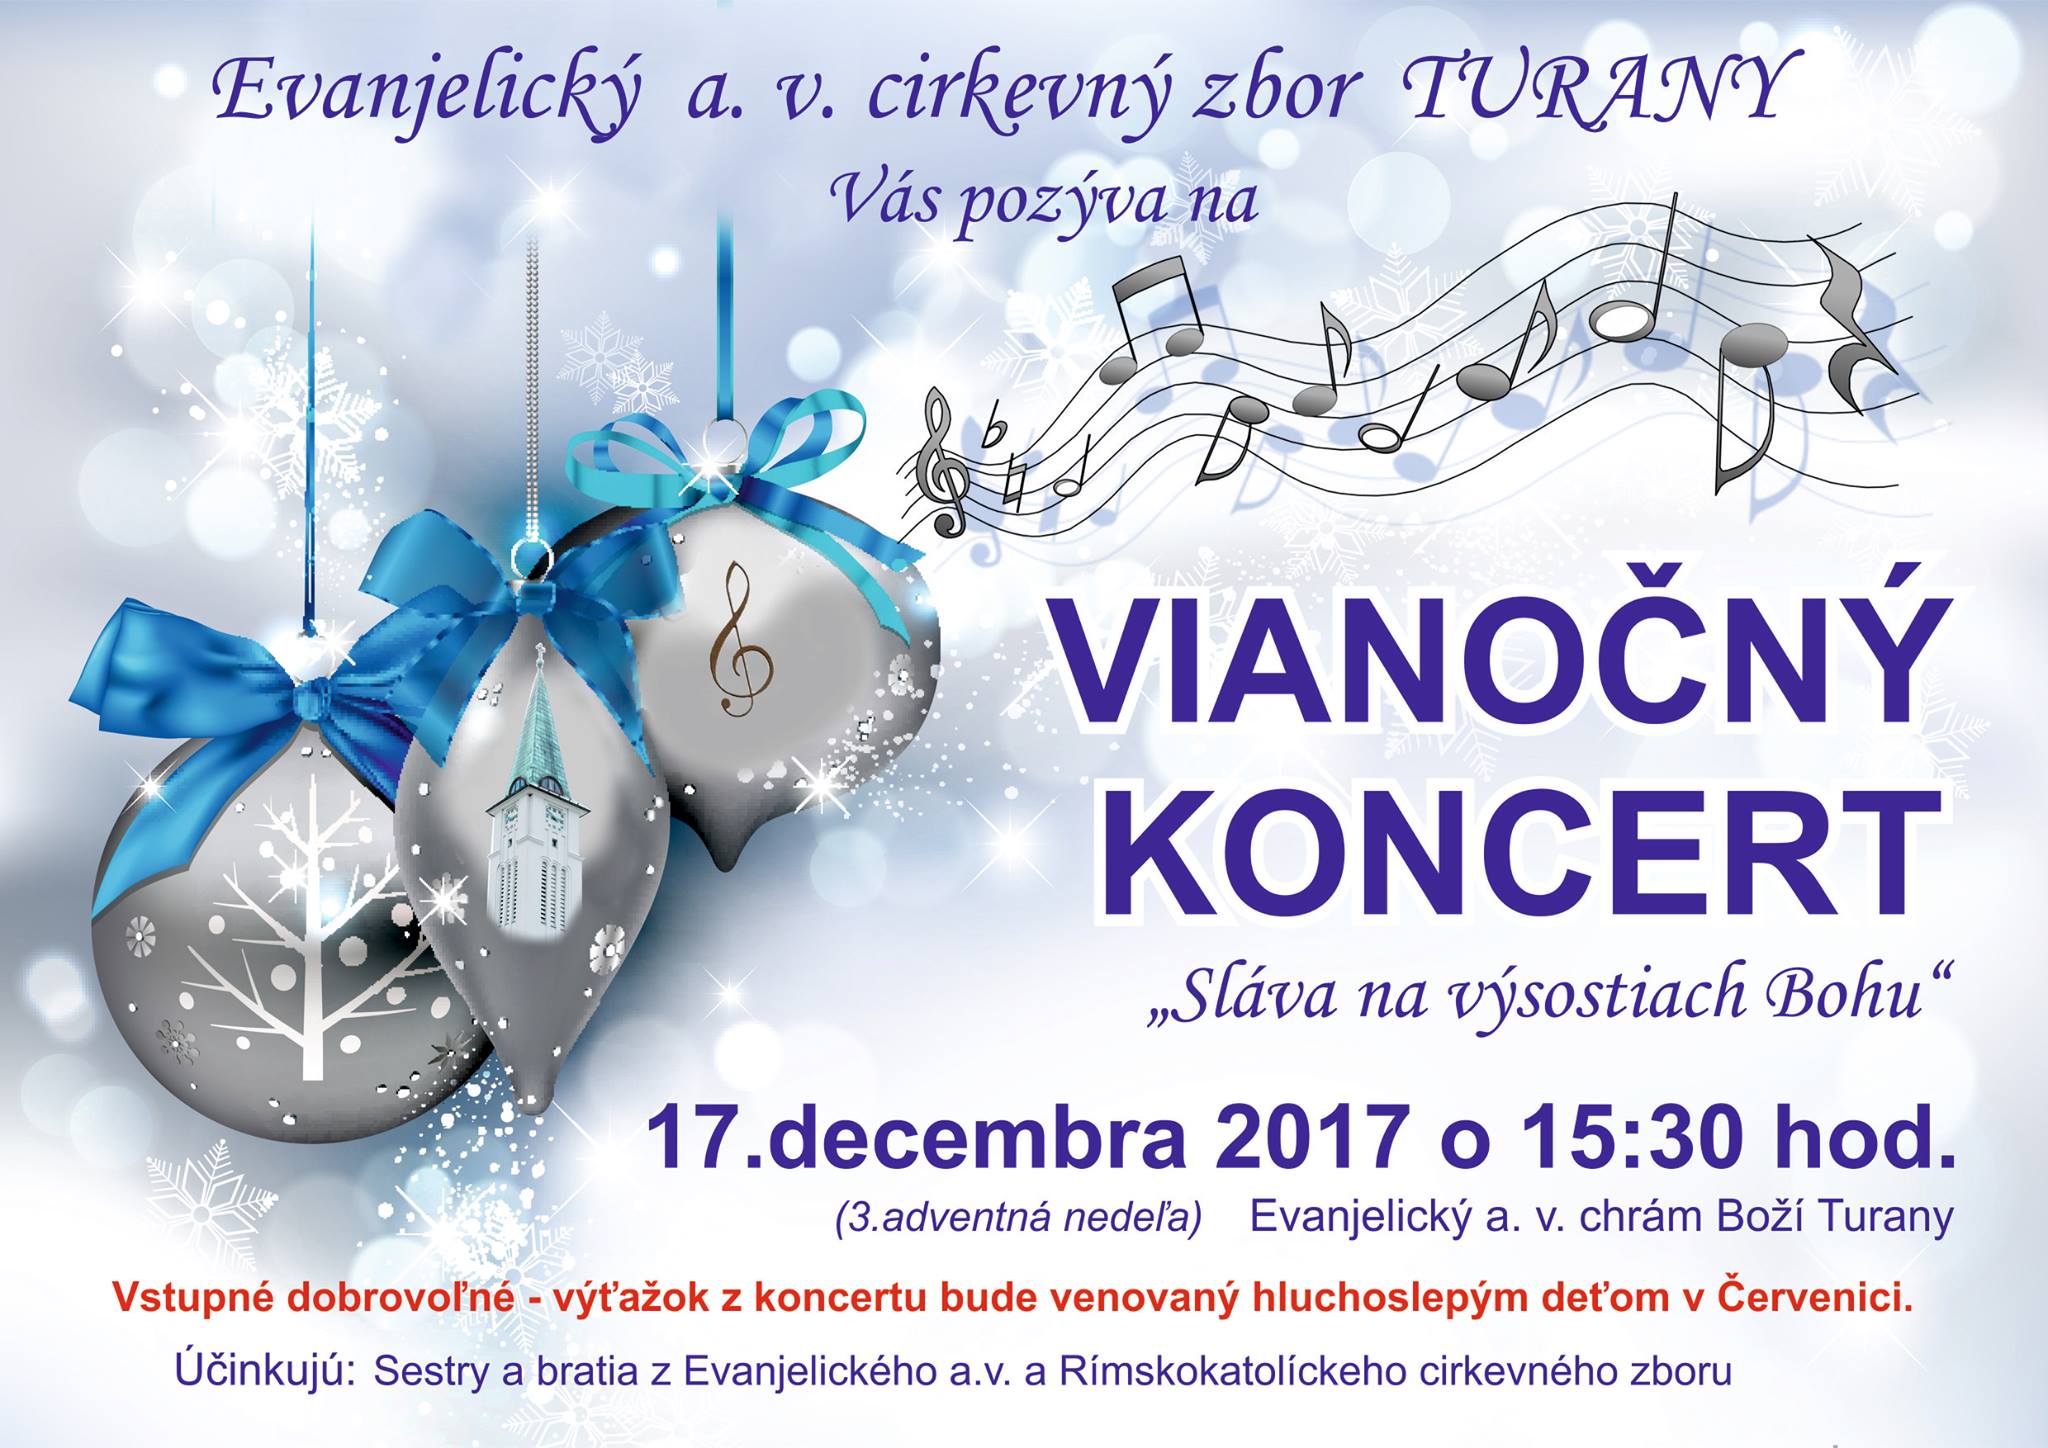 Vianon koncert Turany 2017 - vaok z koncertu bude venovan hluchoslepm deom v ervenici